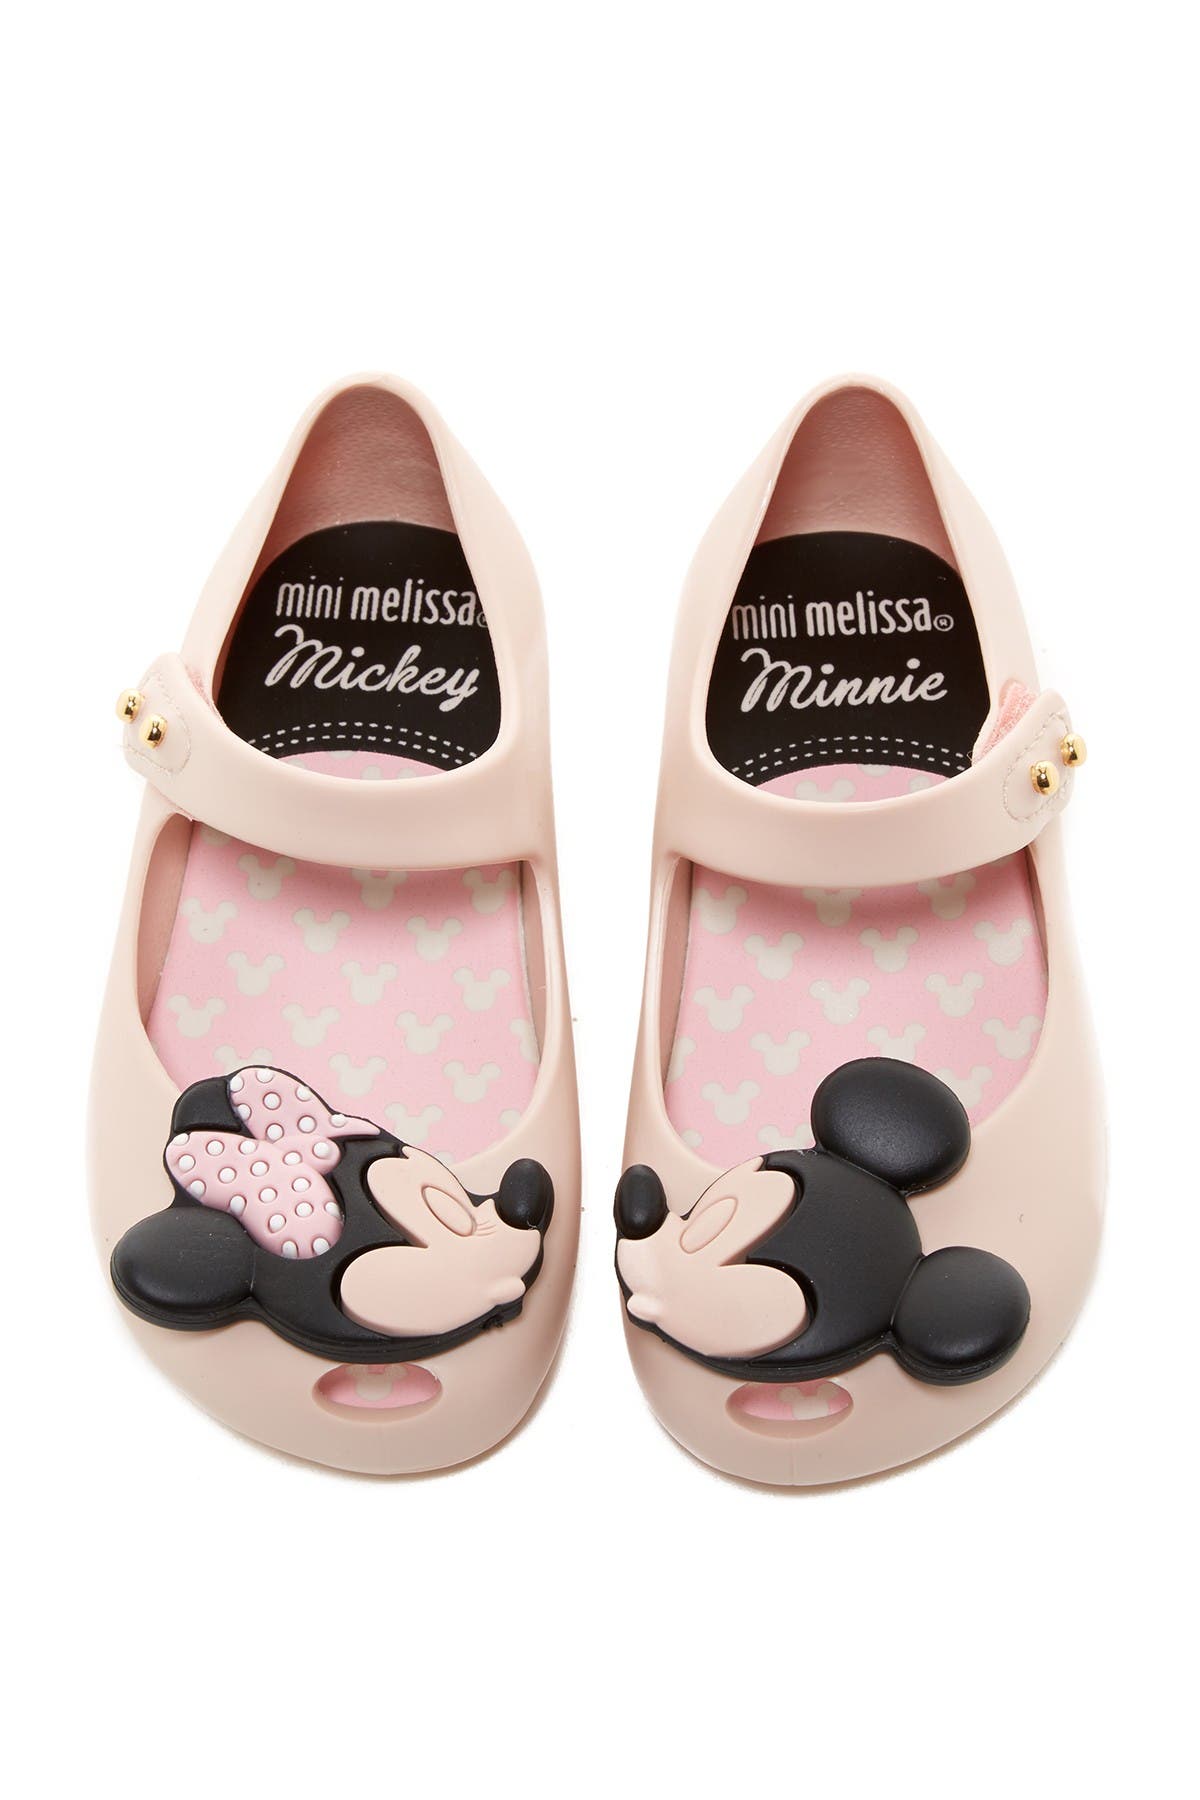 mini melissa mickey shoes